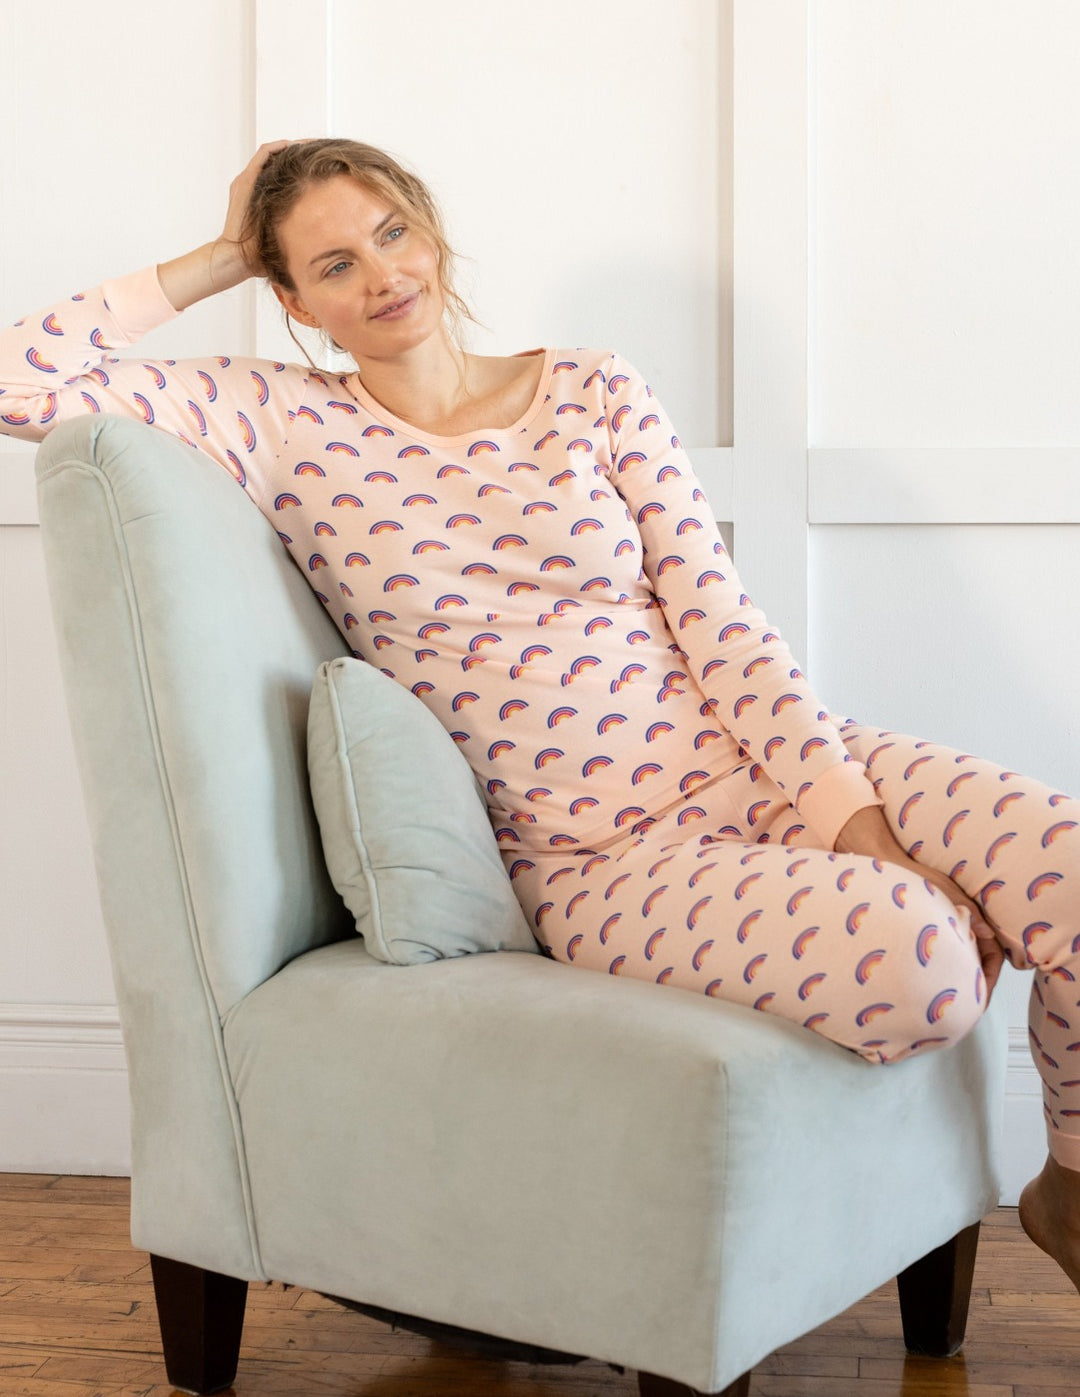 Women's Rainbow Unicorn Pajamas – Leveret Clothing